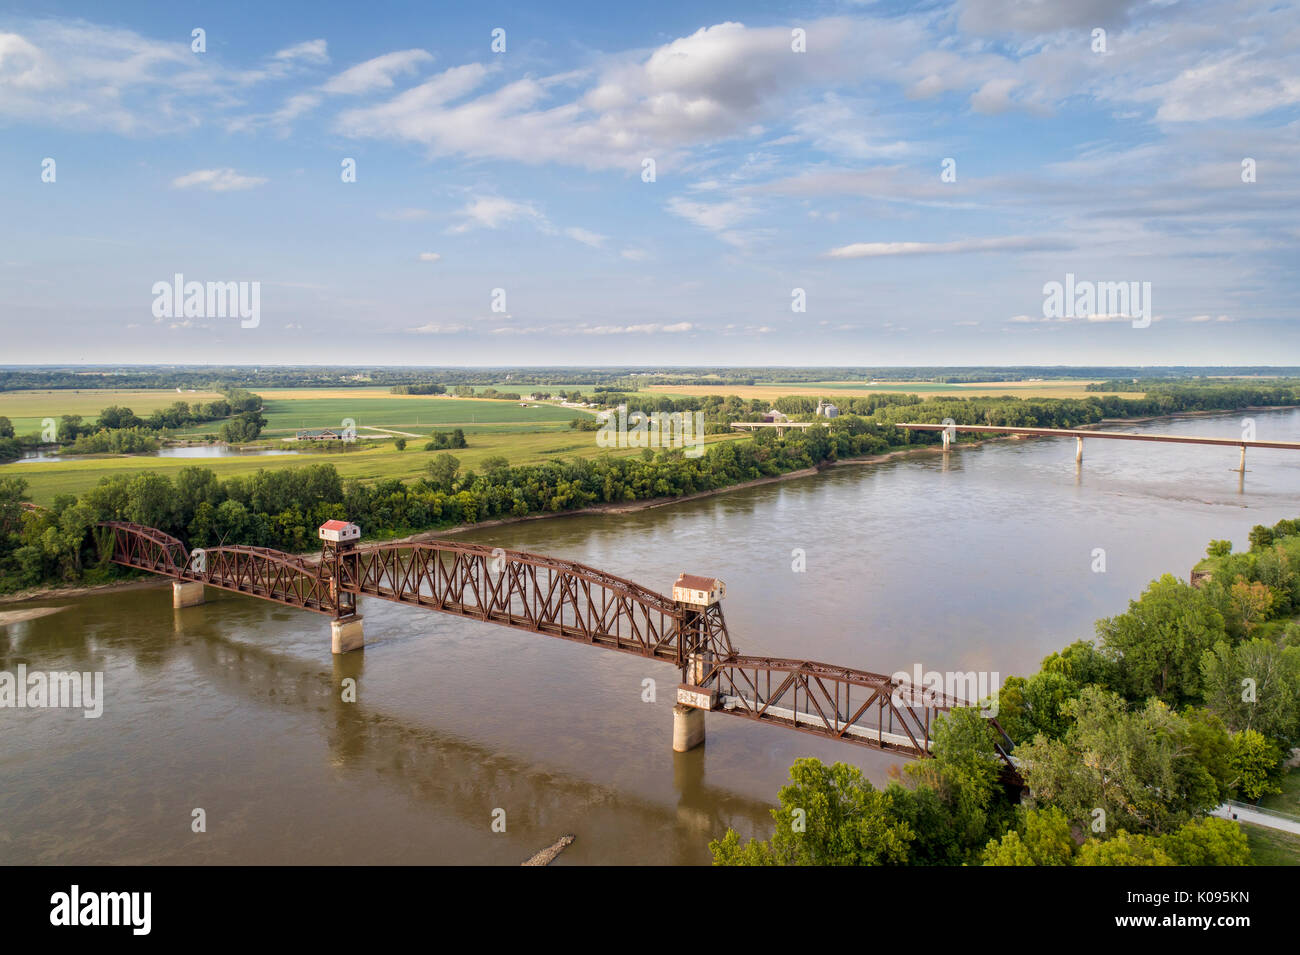 Chemin de fer historique Katy Pont sur la rivière Missouri à Boonville en soulevant une section médiane et plate-forme d'observation des visiteurs - vue aérienne Banque D'Images